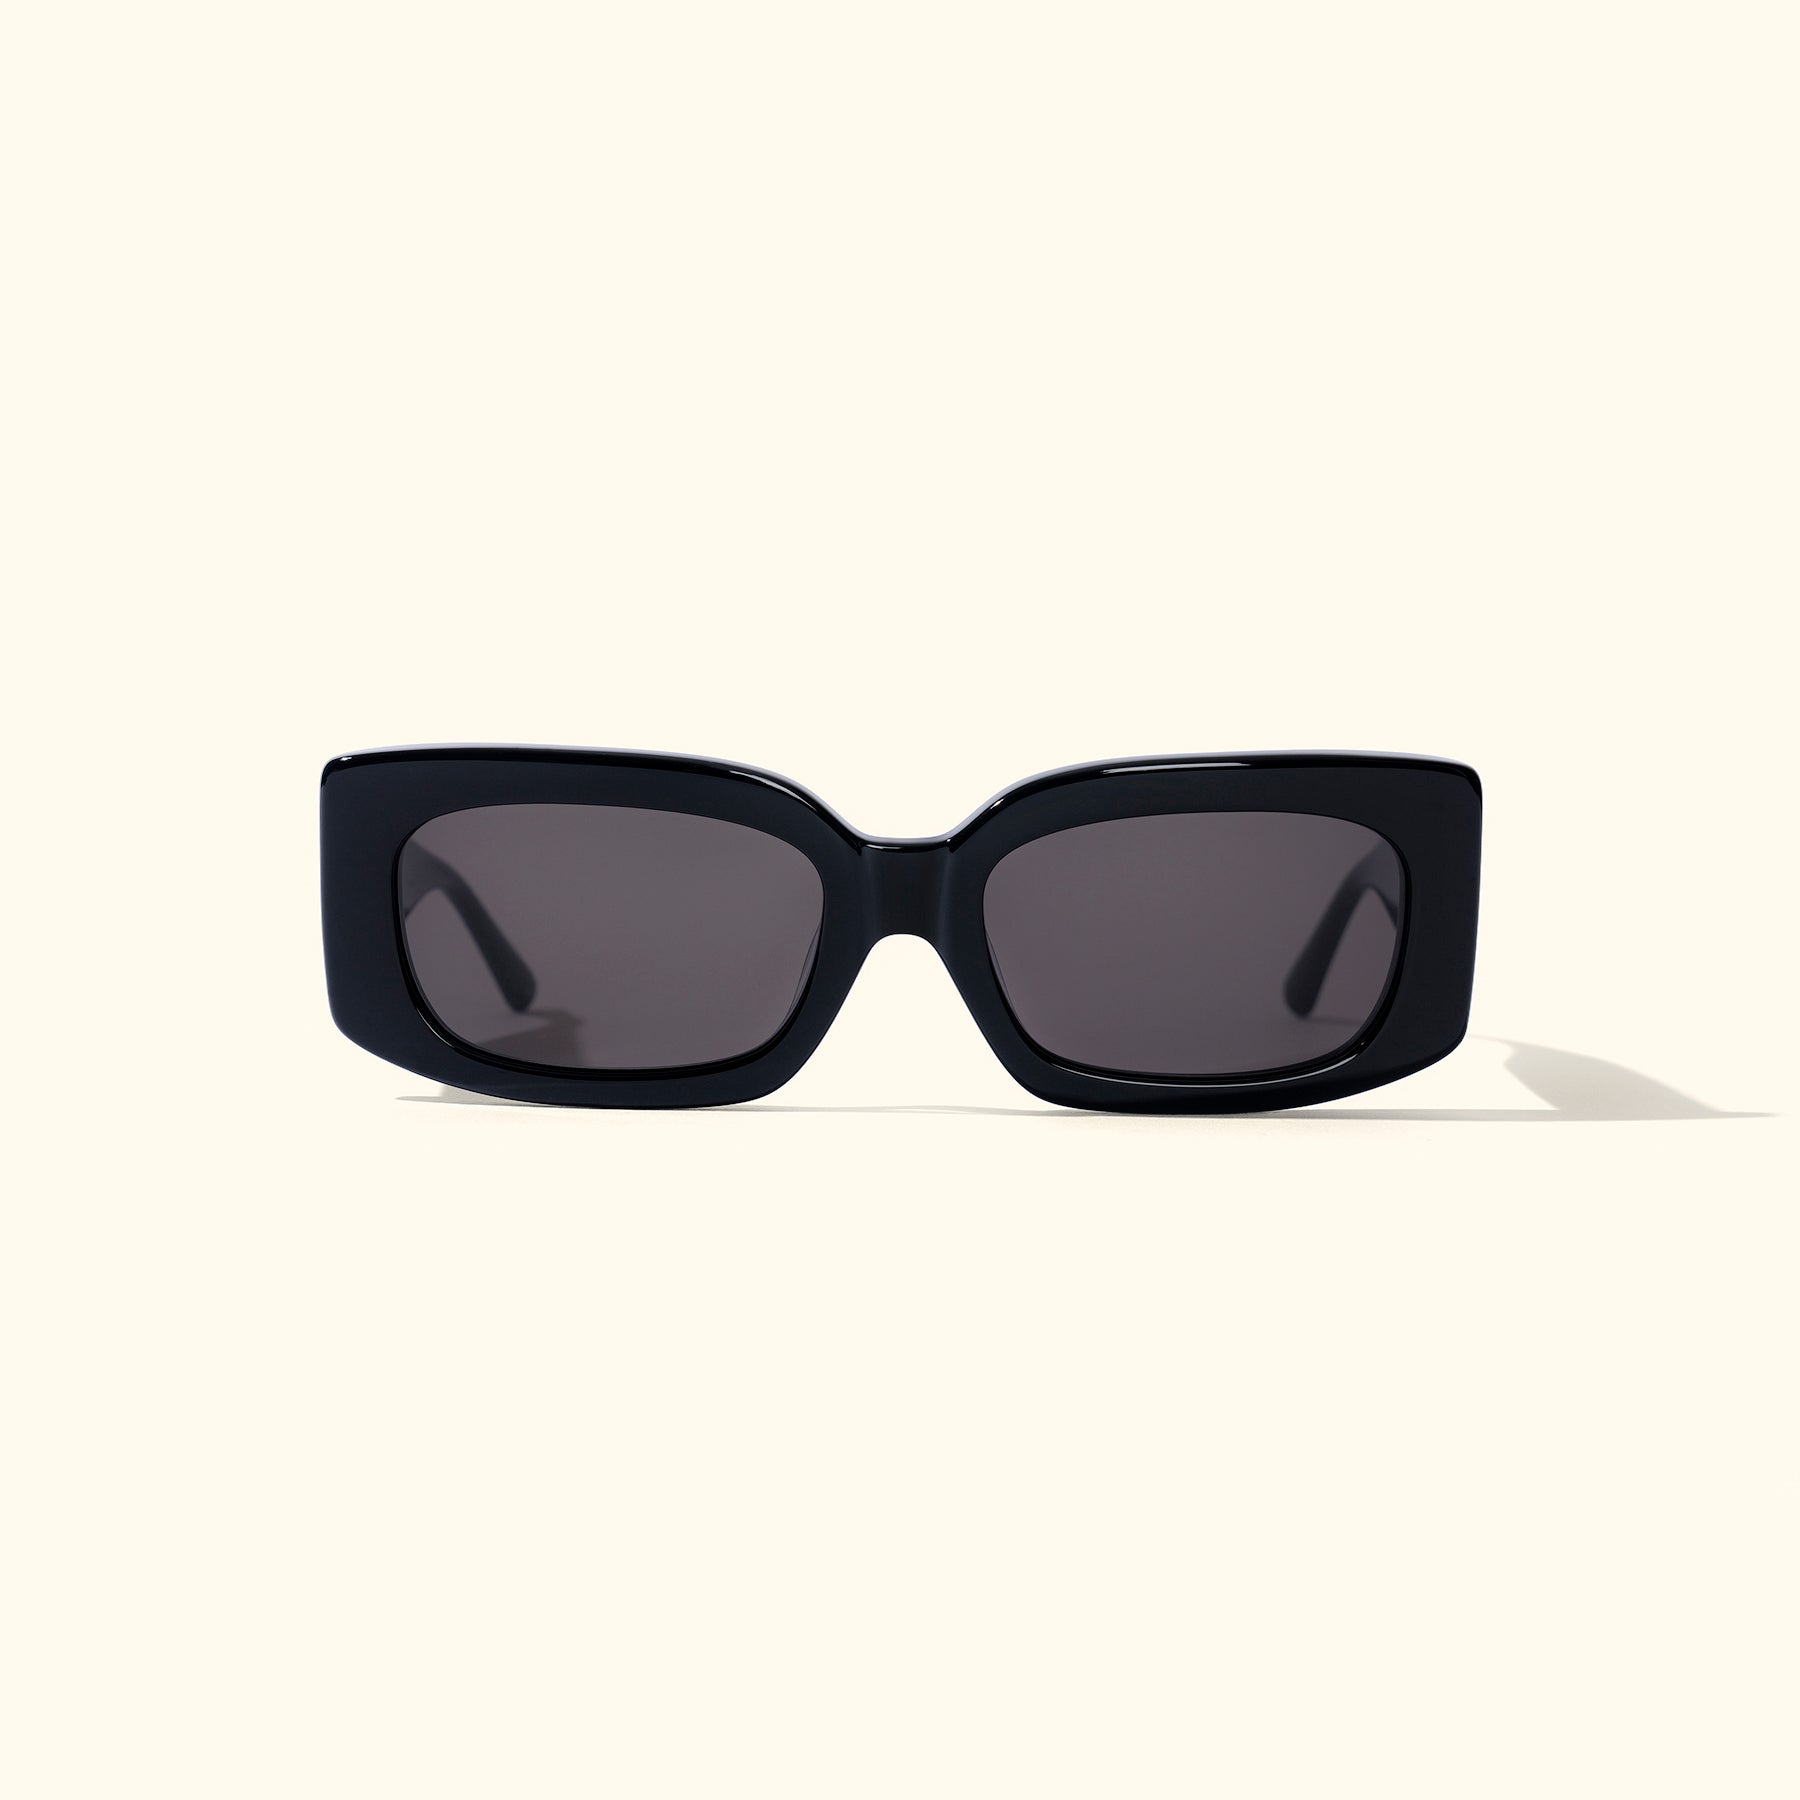 Sunseeker Sunglasses Black